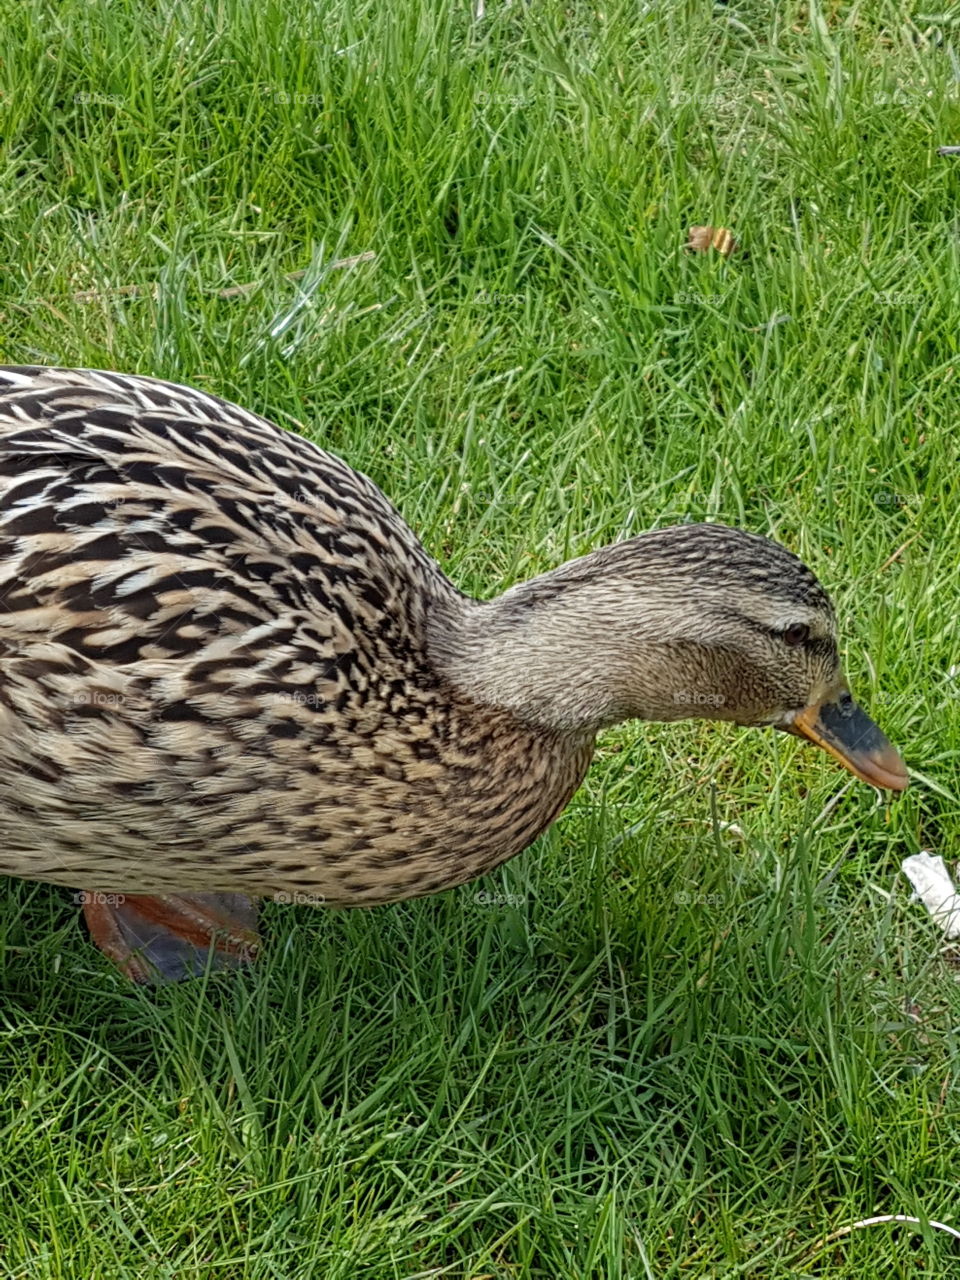 duck
outdoor
nature
grass